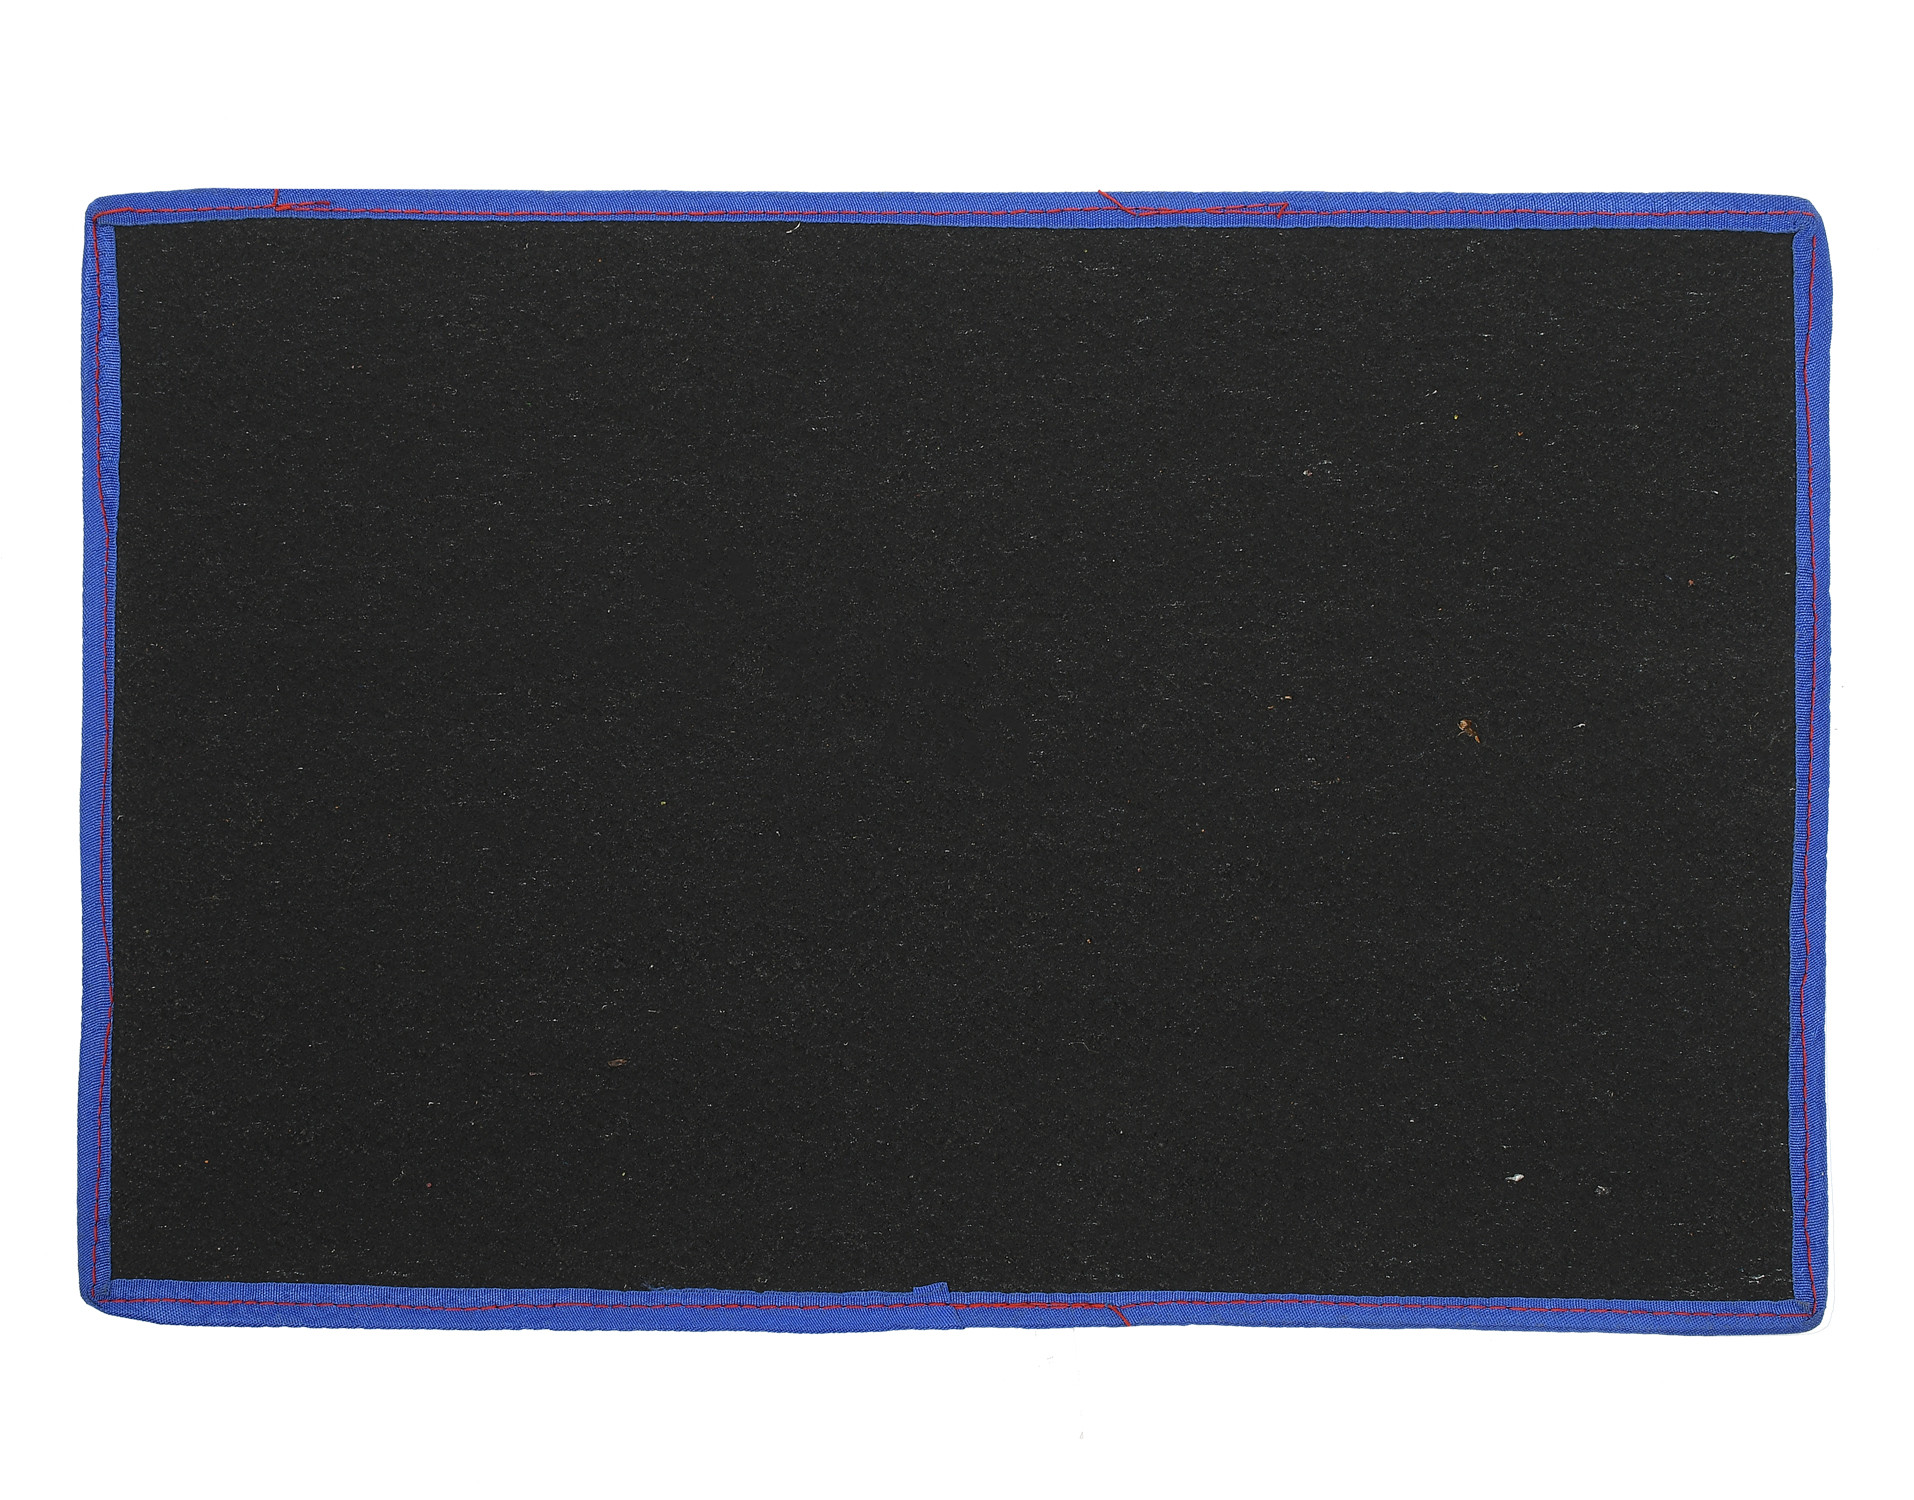 Kuber Industries Shaggy Durable Microfiber Anti-Skid Door Mat, Heavy Duty Doormat, Indoor Outdoor, Easy Clean, Waterproof, Low-Profile Mats for Entry, Patio, Garage (Blue)-33_S_KUBQMART11488